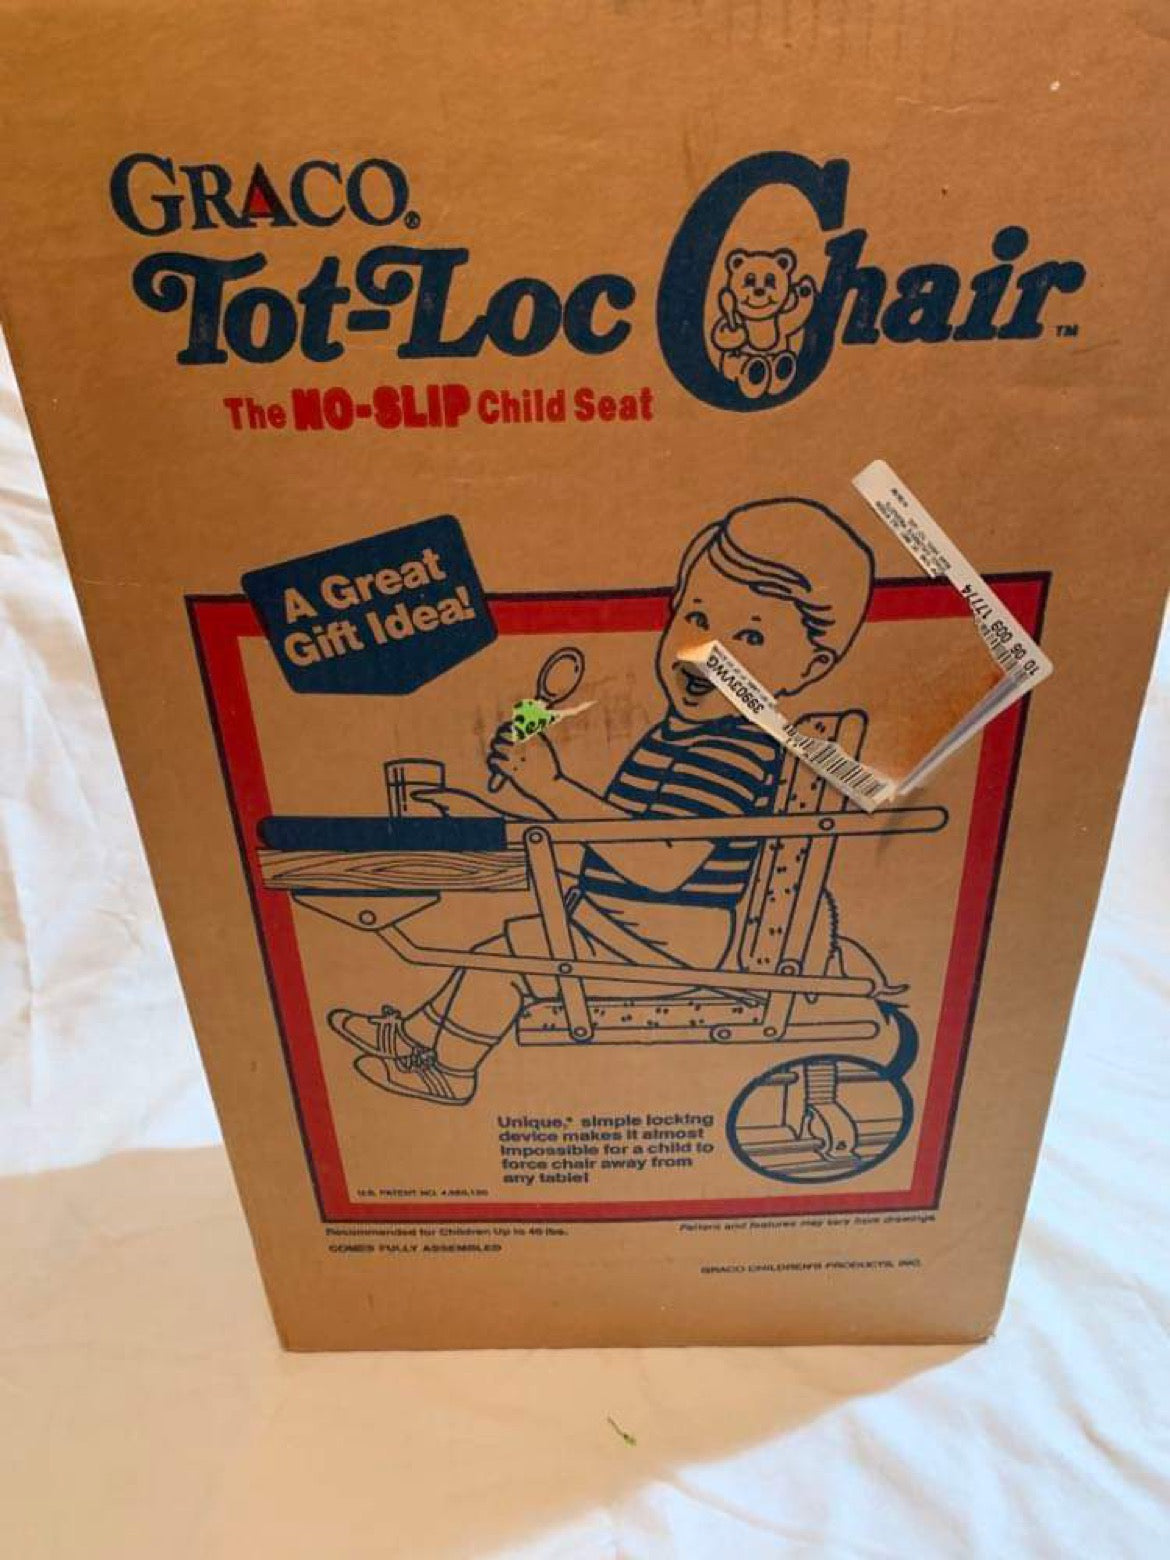 Graco Tot-Loc High chair